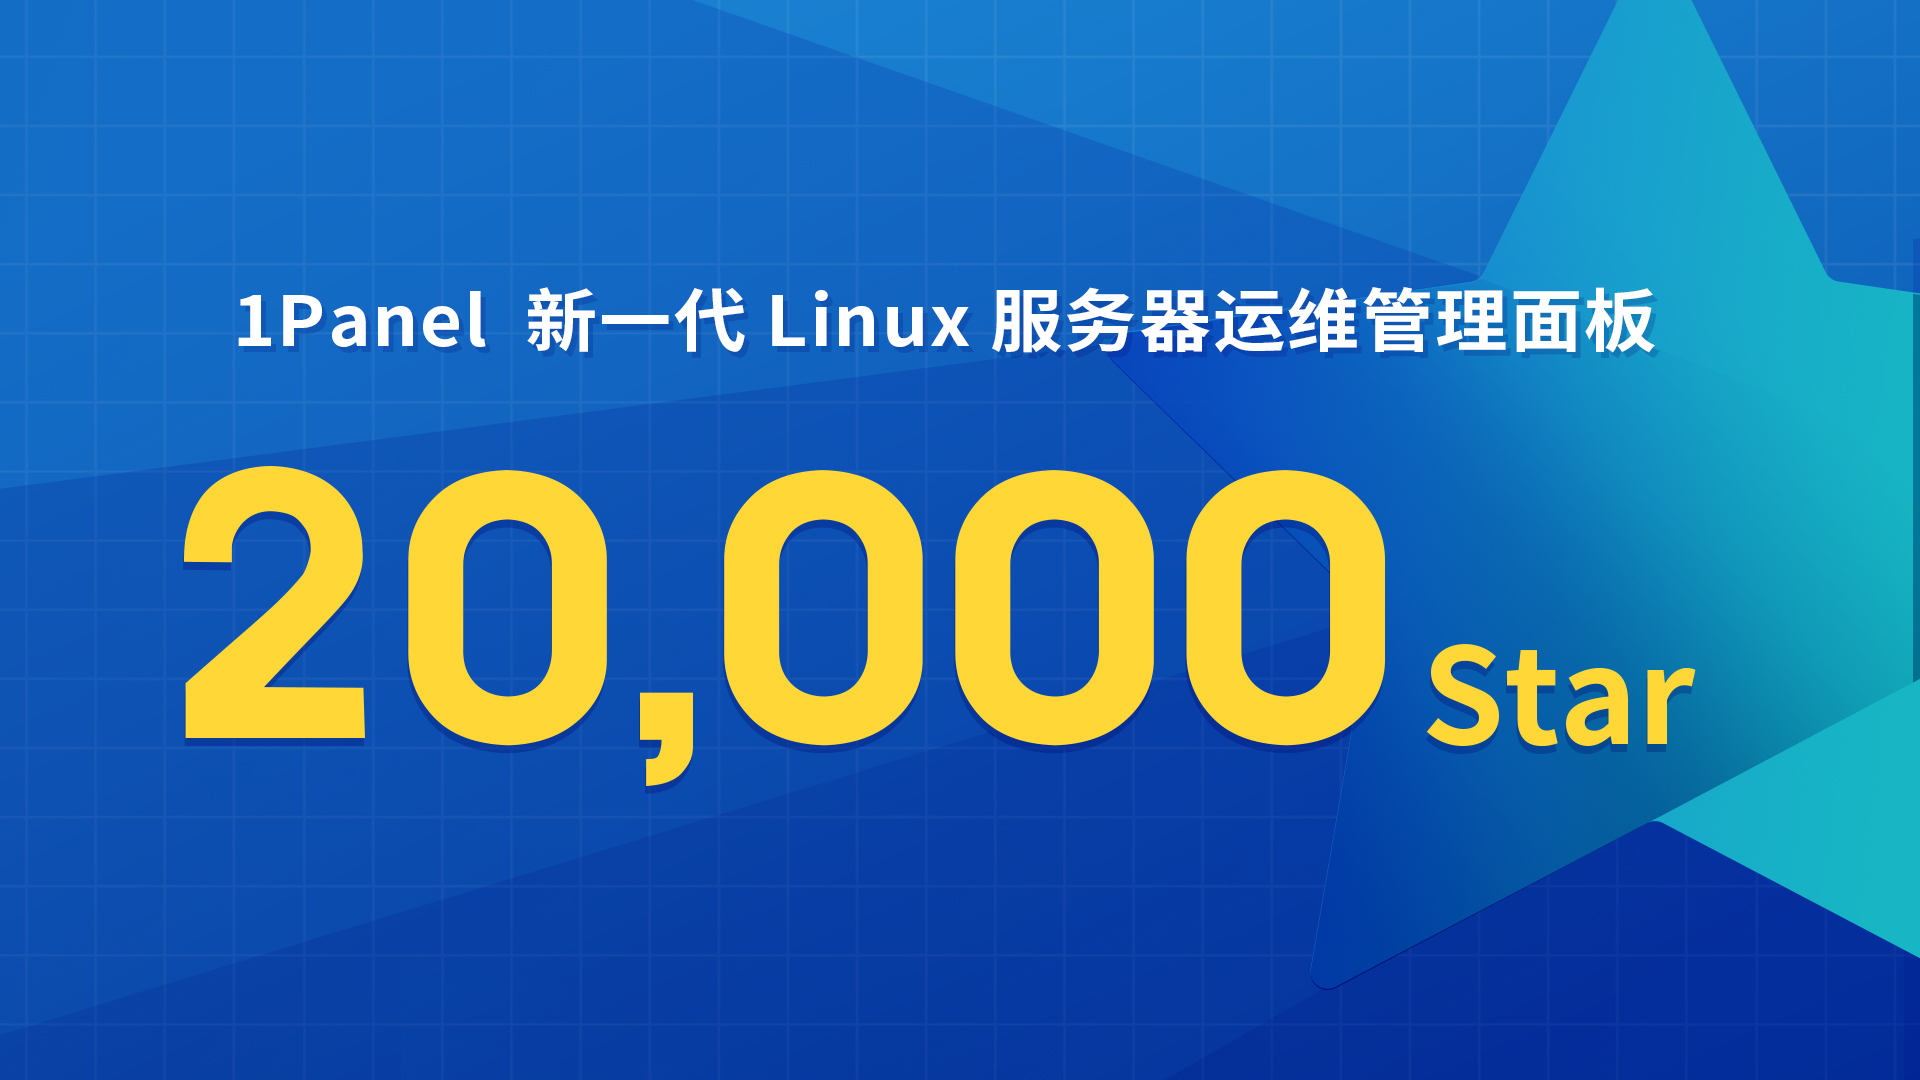 1Panel开源面板项目GitHub Star数量突破20,000！